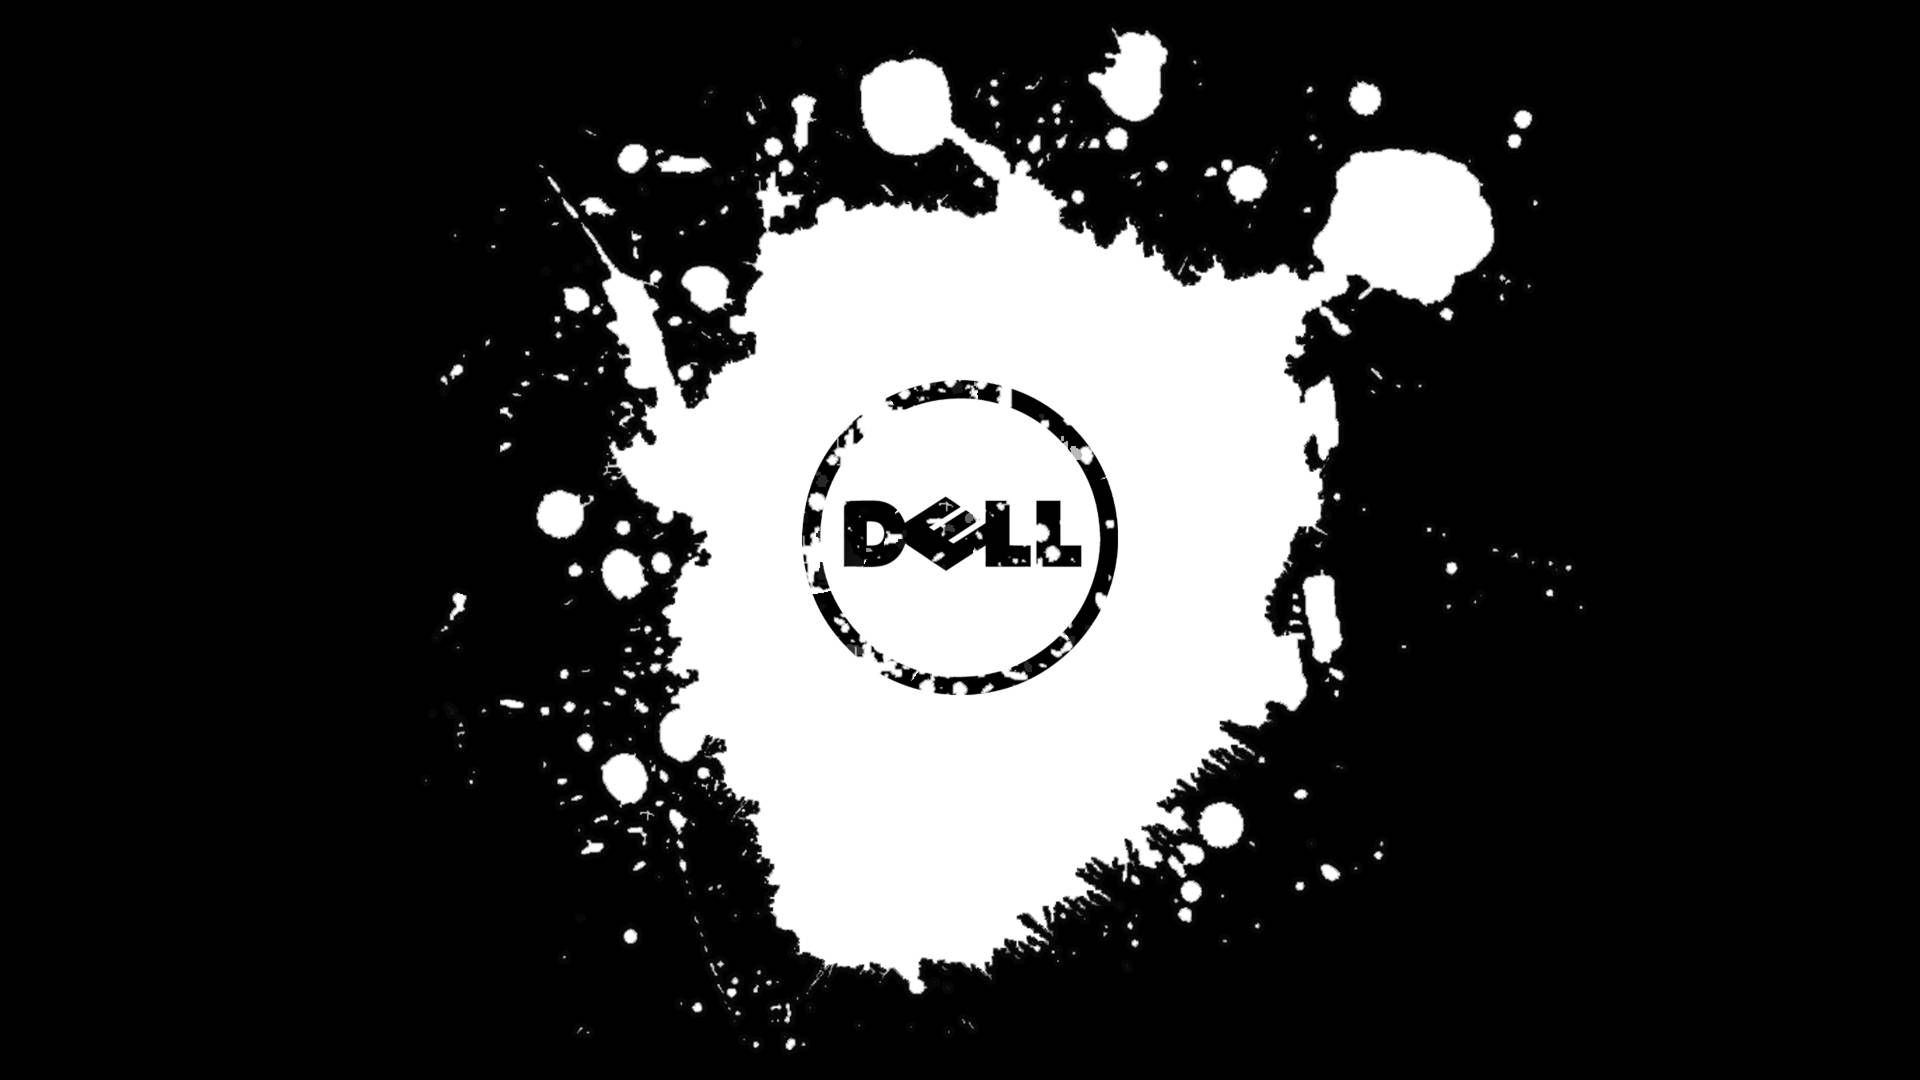  Dell Hintergrundbild 1920x1080. Free Dell 4k Wallpaper Downloads, Dell 4k Wallpaper for FREE